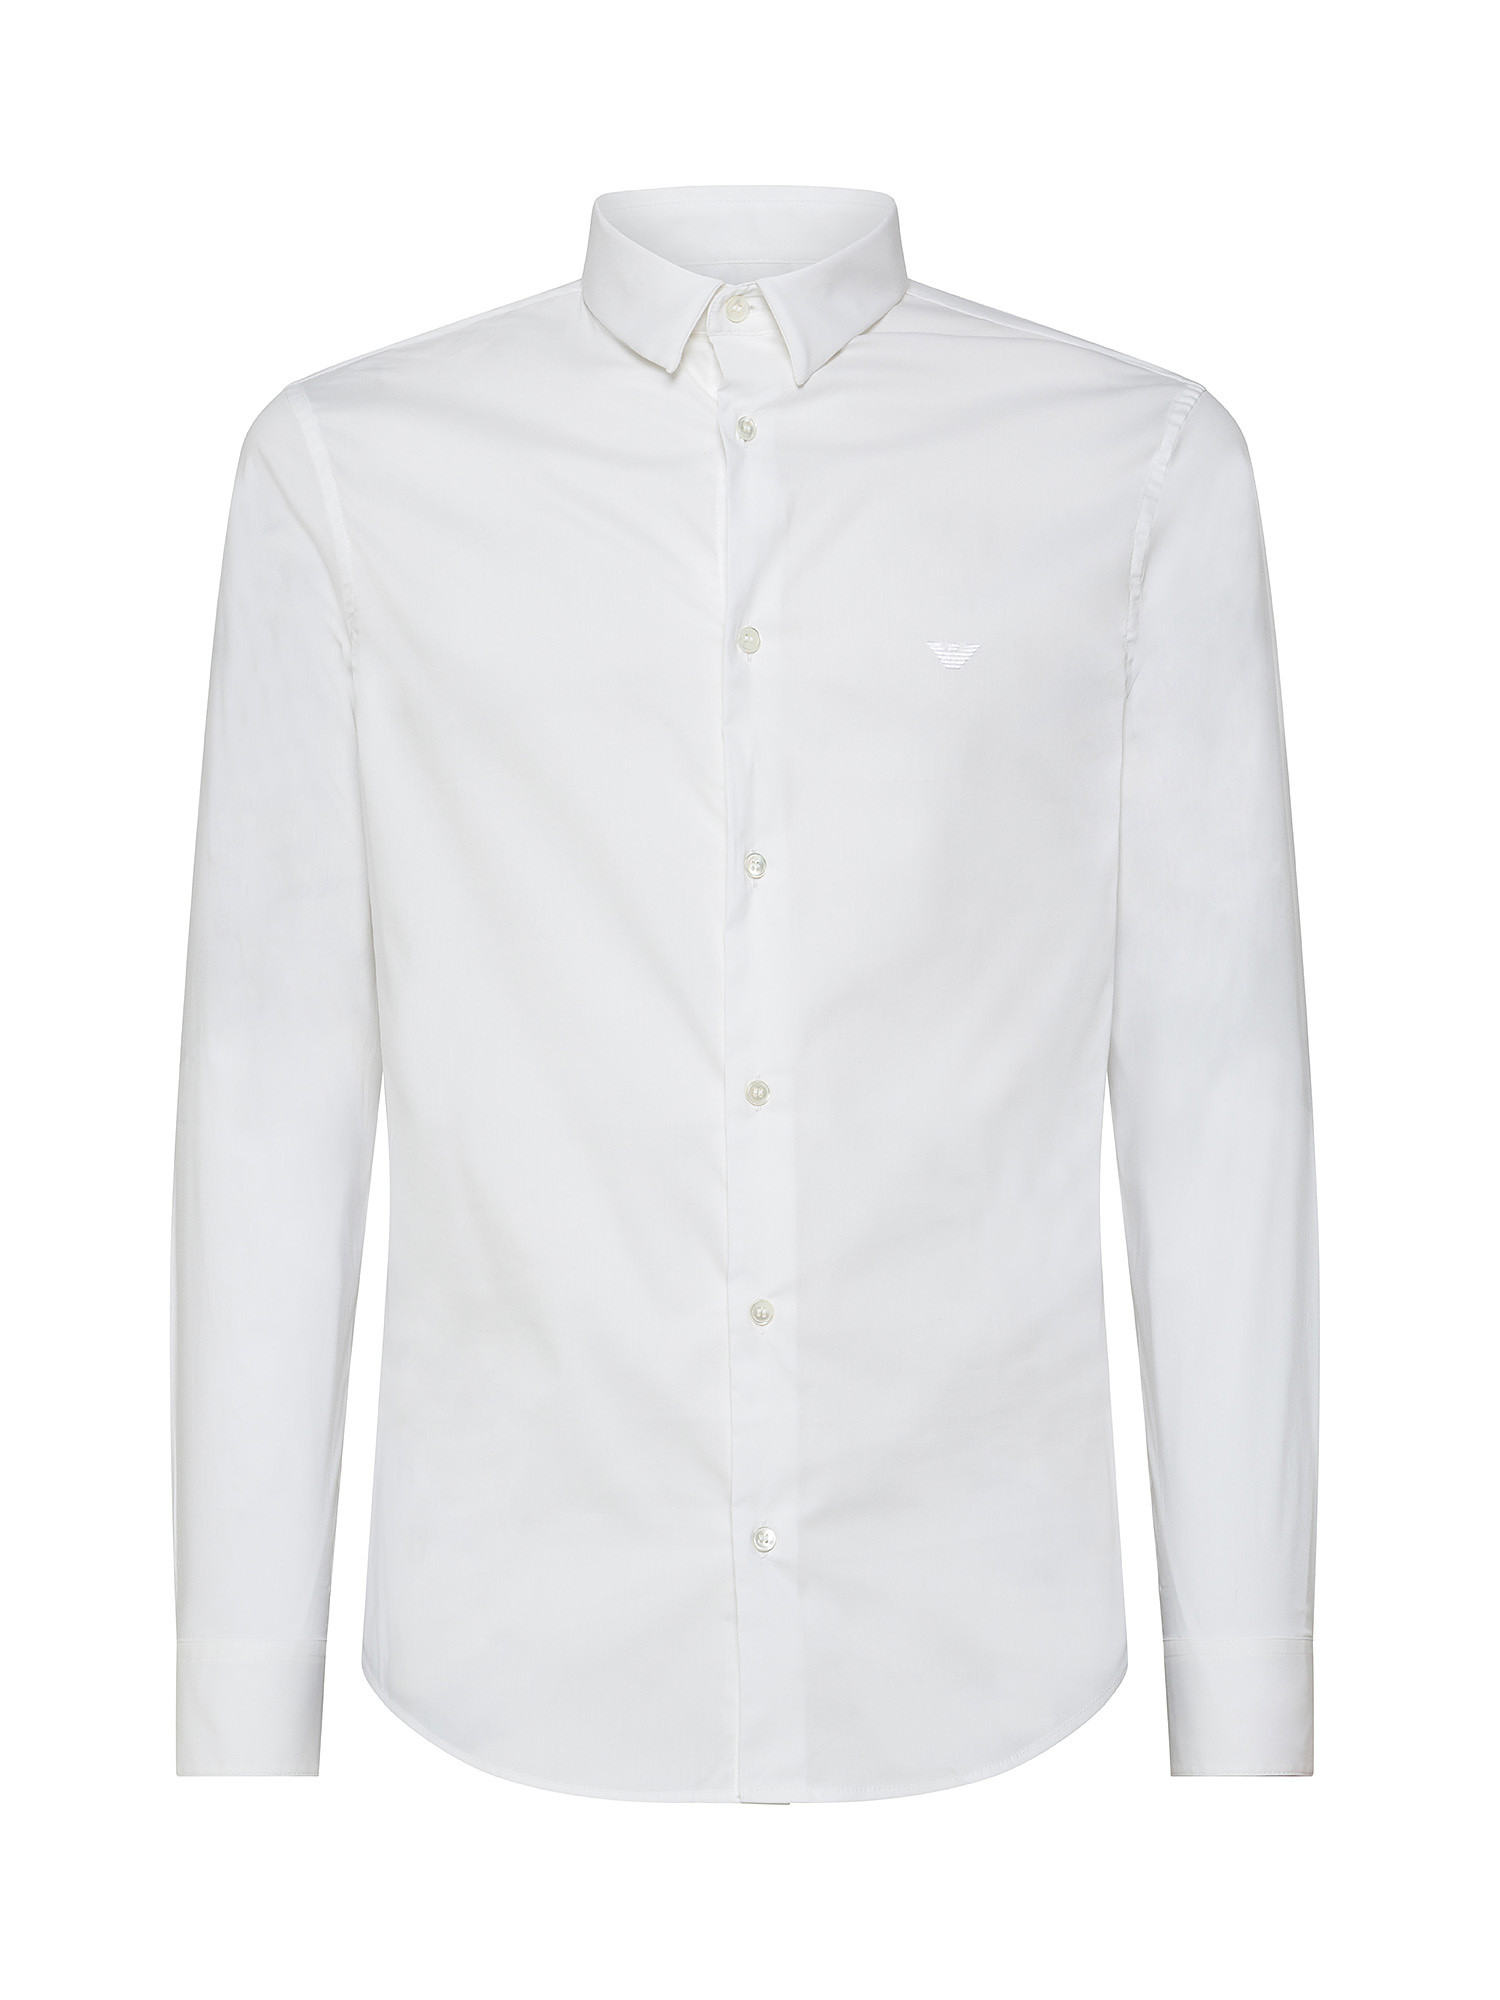 Emporio Armani - Camicia con logo ricamato, Bianco, large image number 1